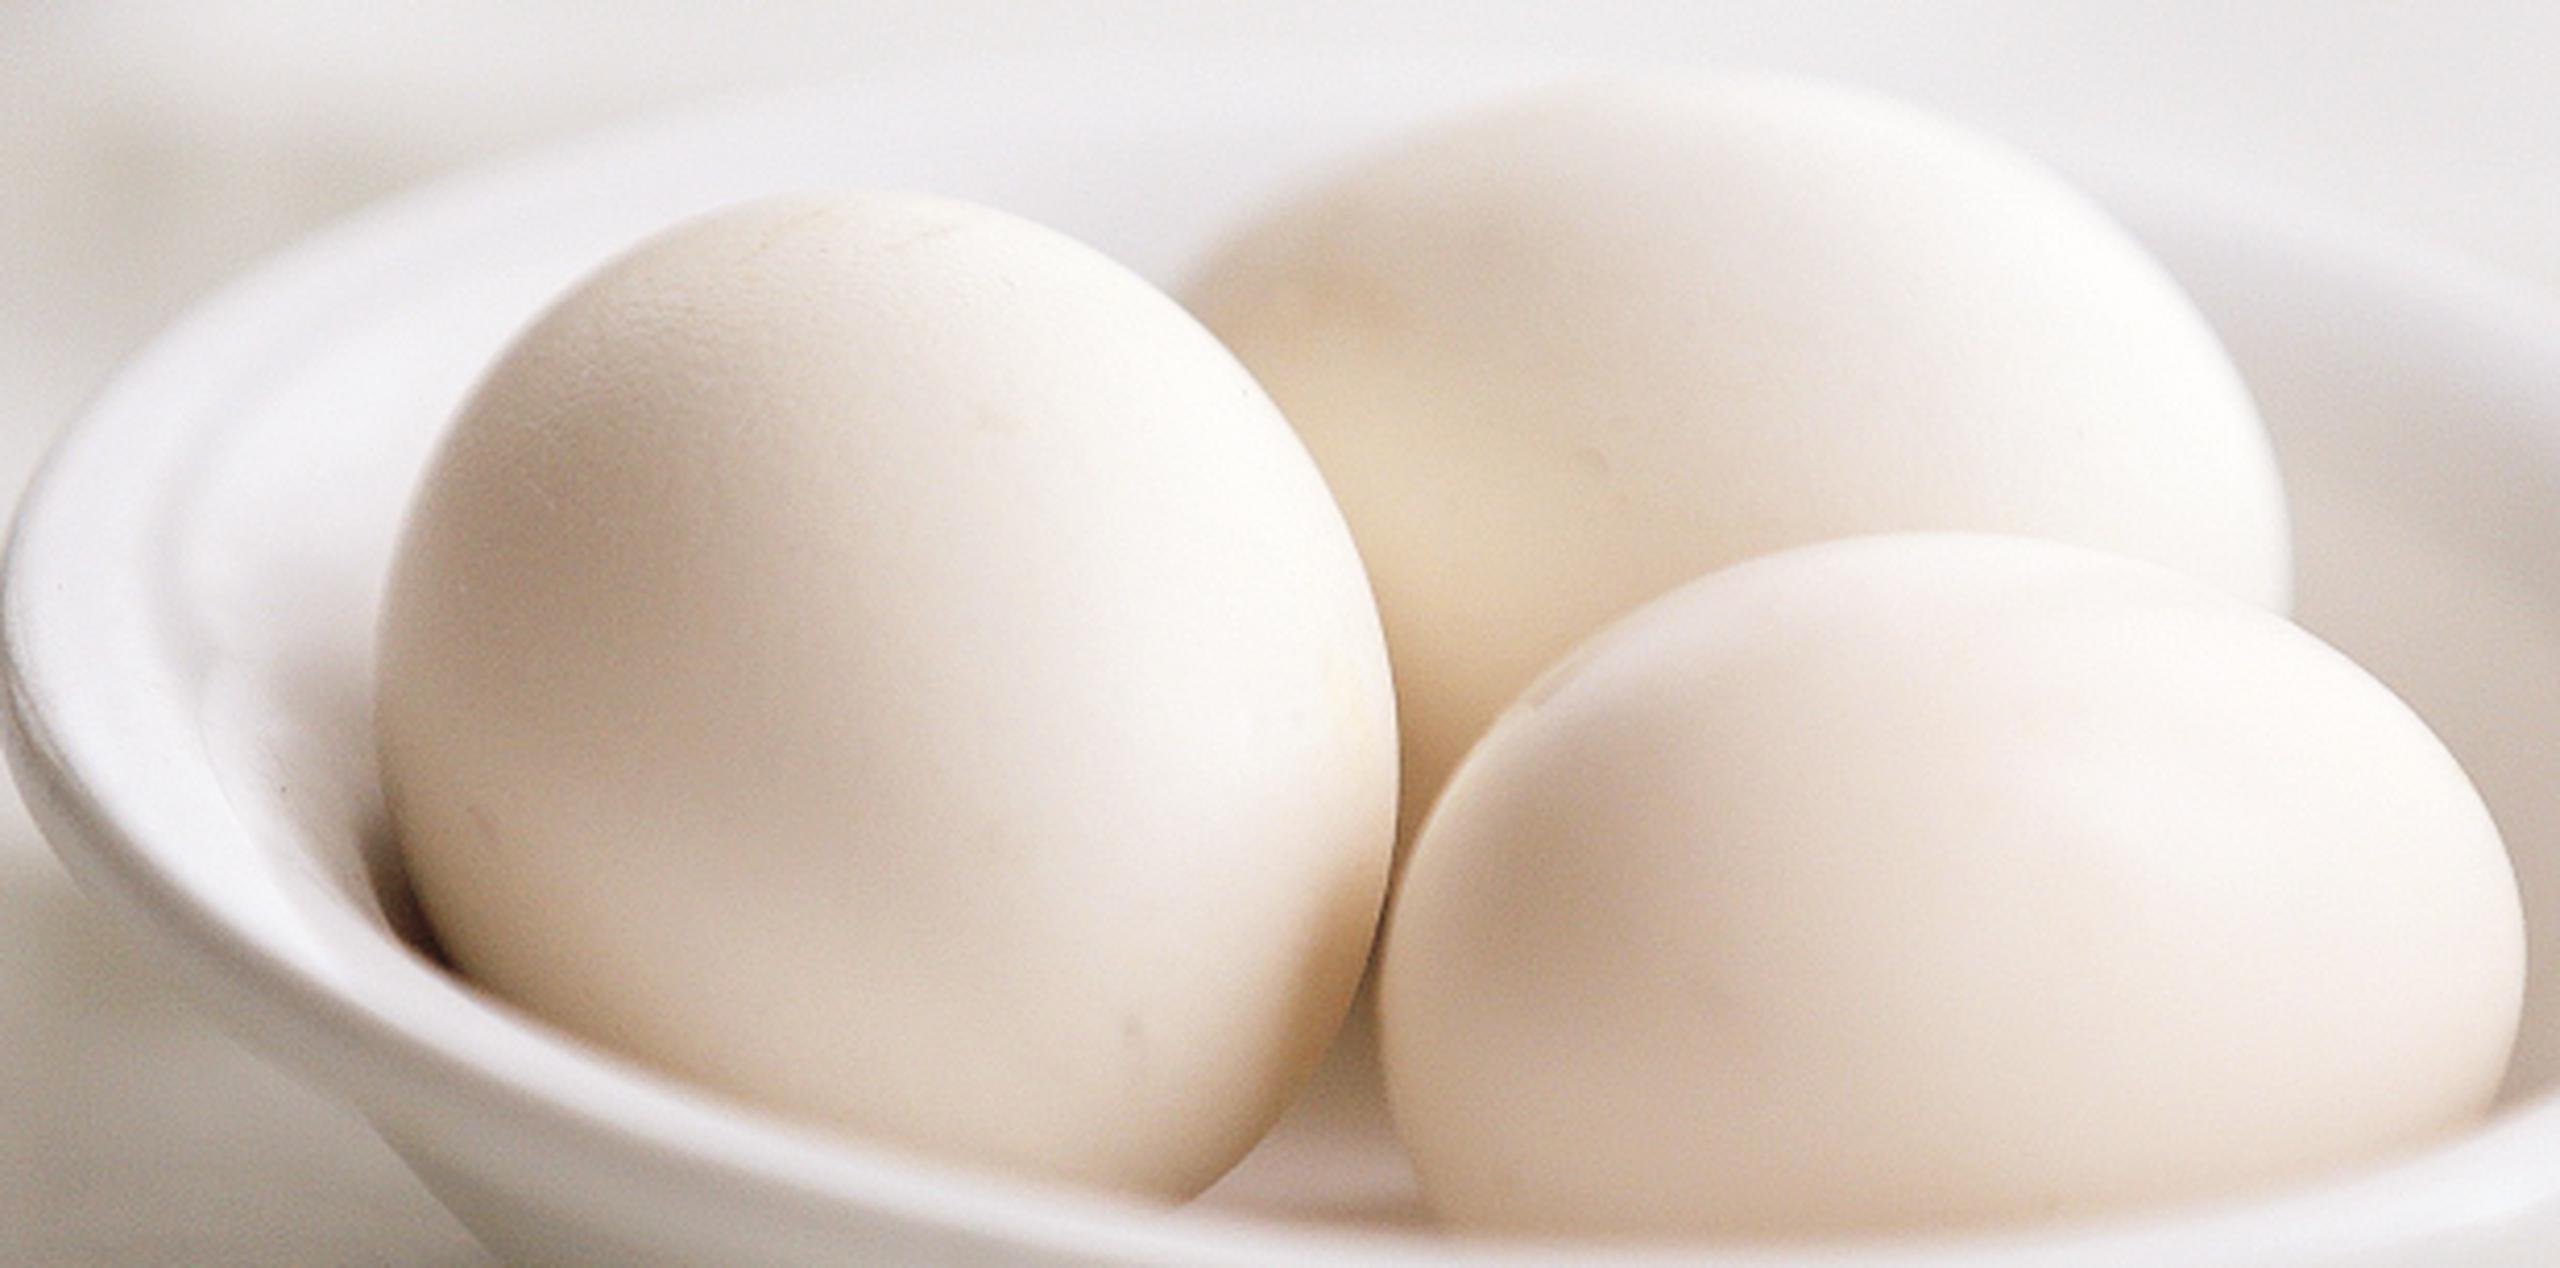 El gobierno recomienda "no comer" los huevos blancos con la etiqueta X-NL-40155XX. (Archivo)